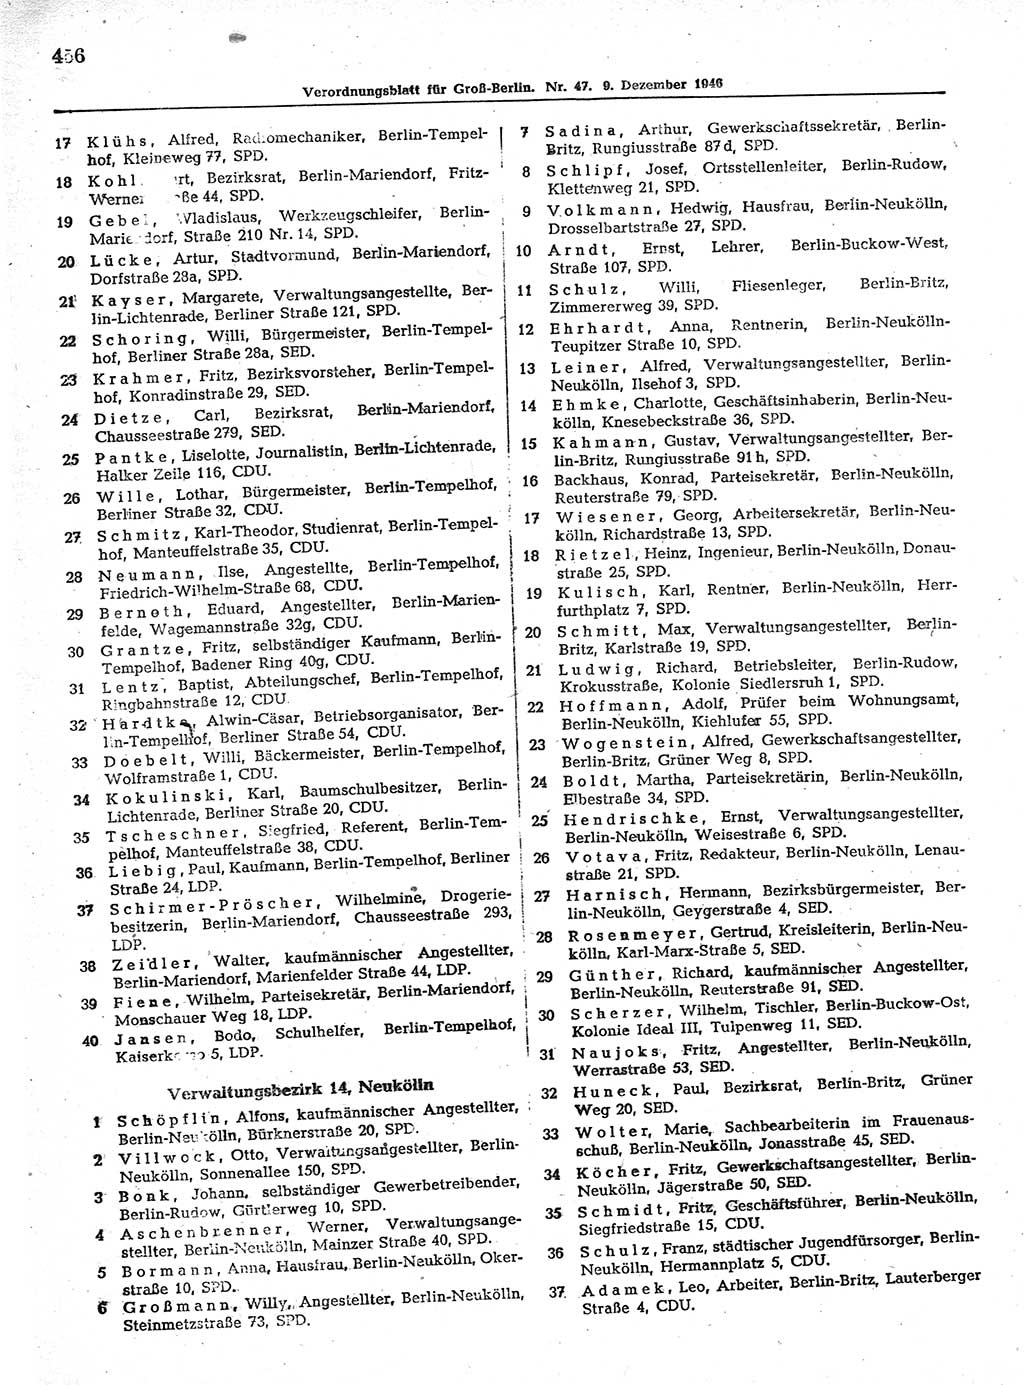 Verordnungsblatt (VOBl.) der Stadt Berlin, für Groß-Berlin 1946, Seite 456 (VOBl. Bln. 1946, S. 456)